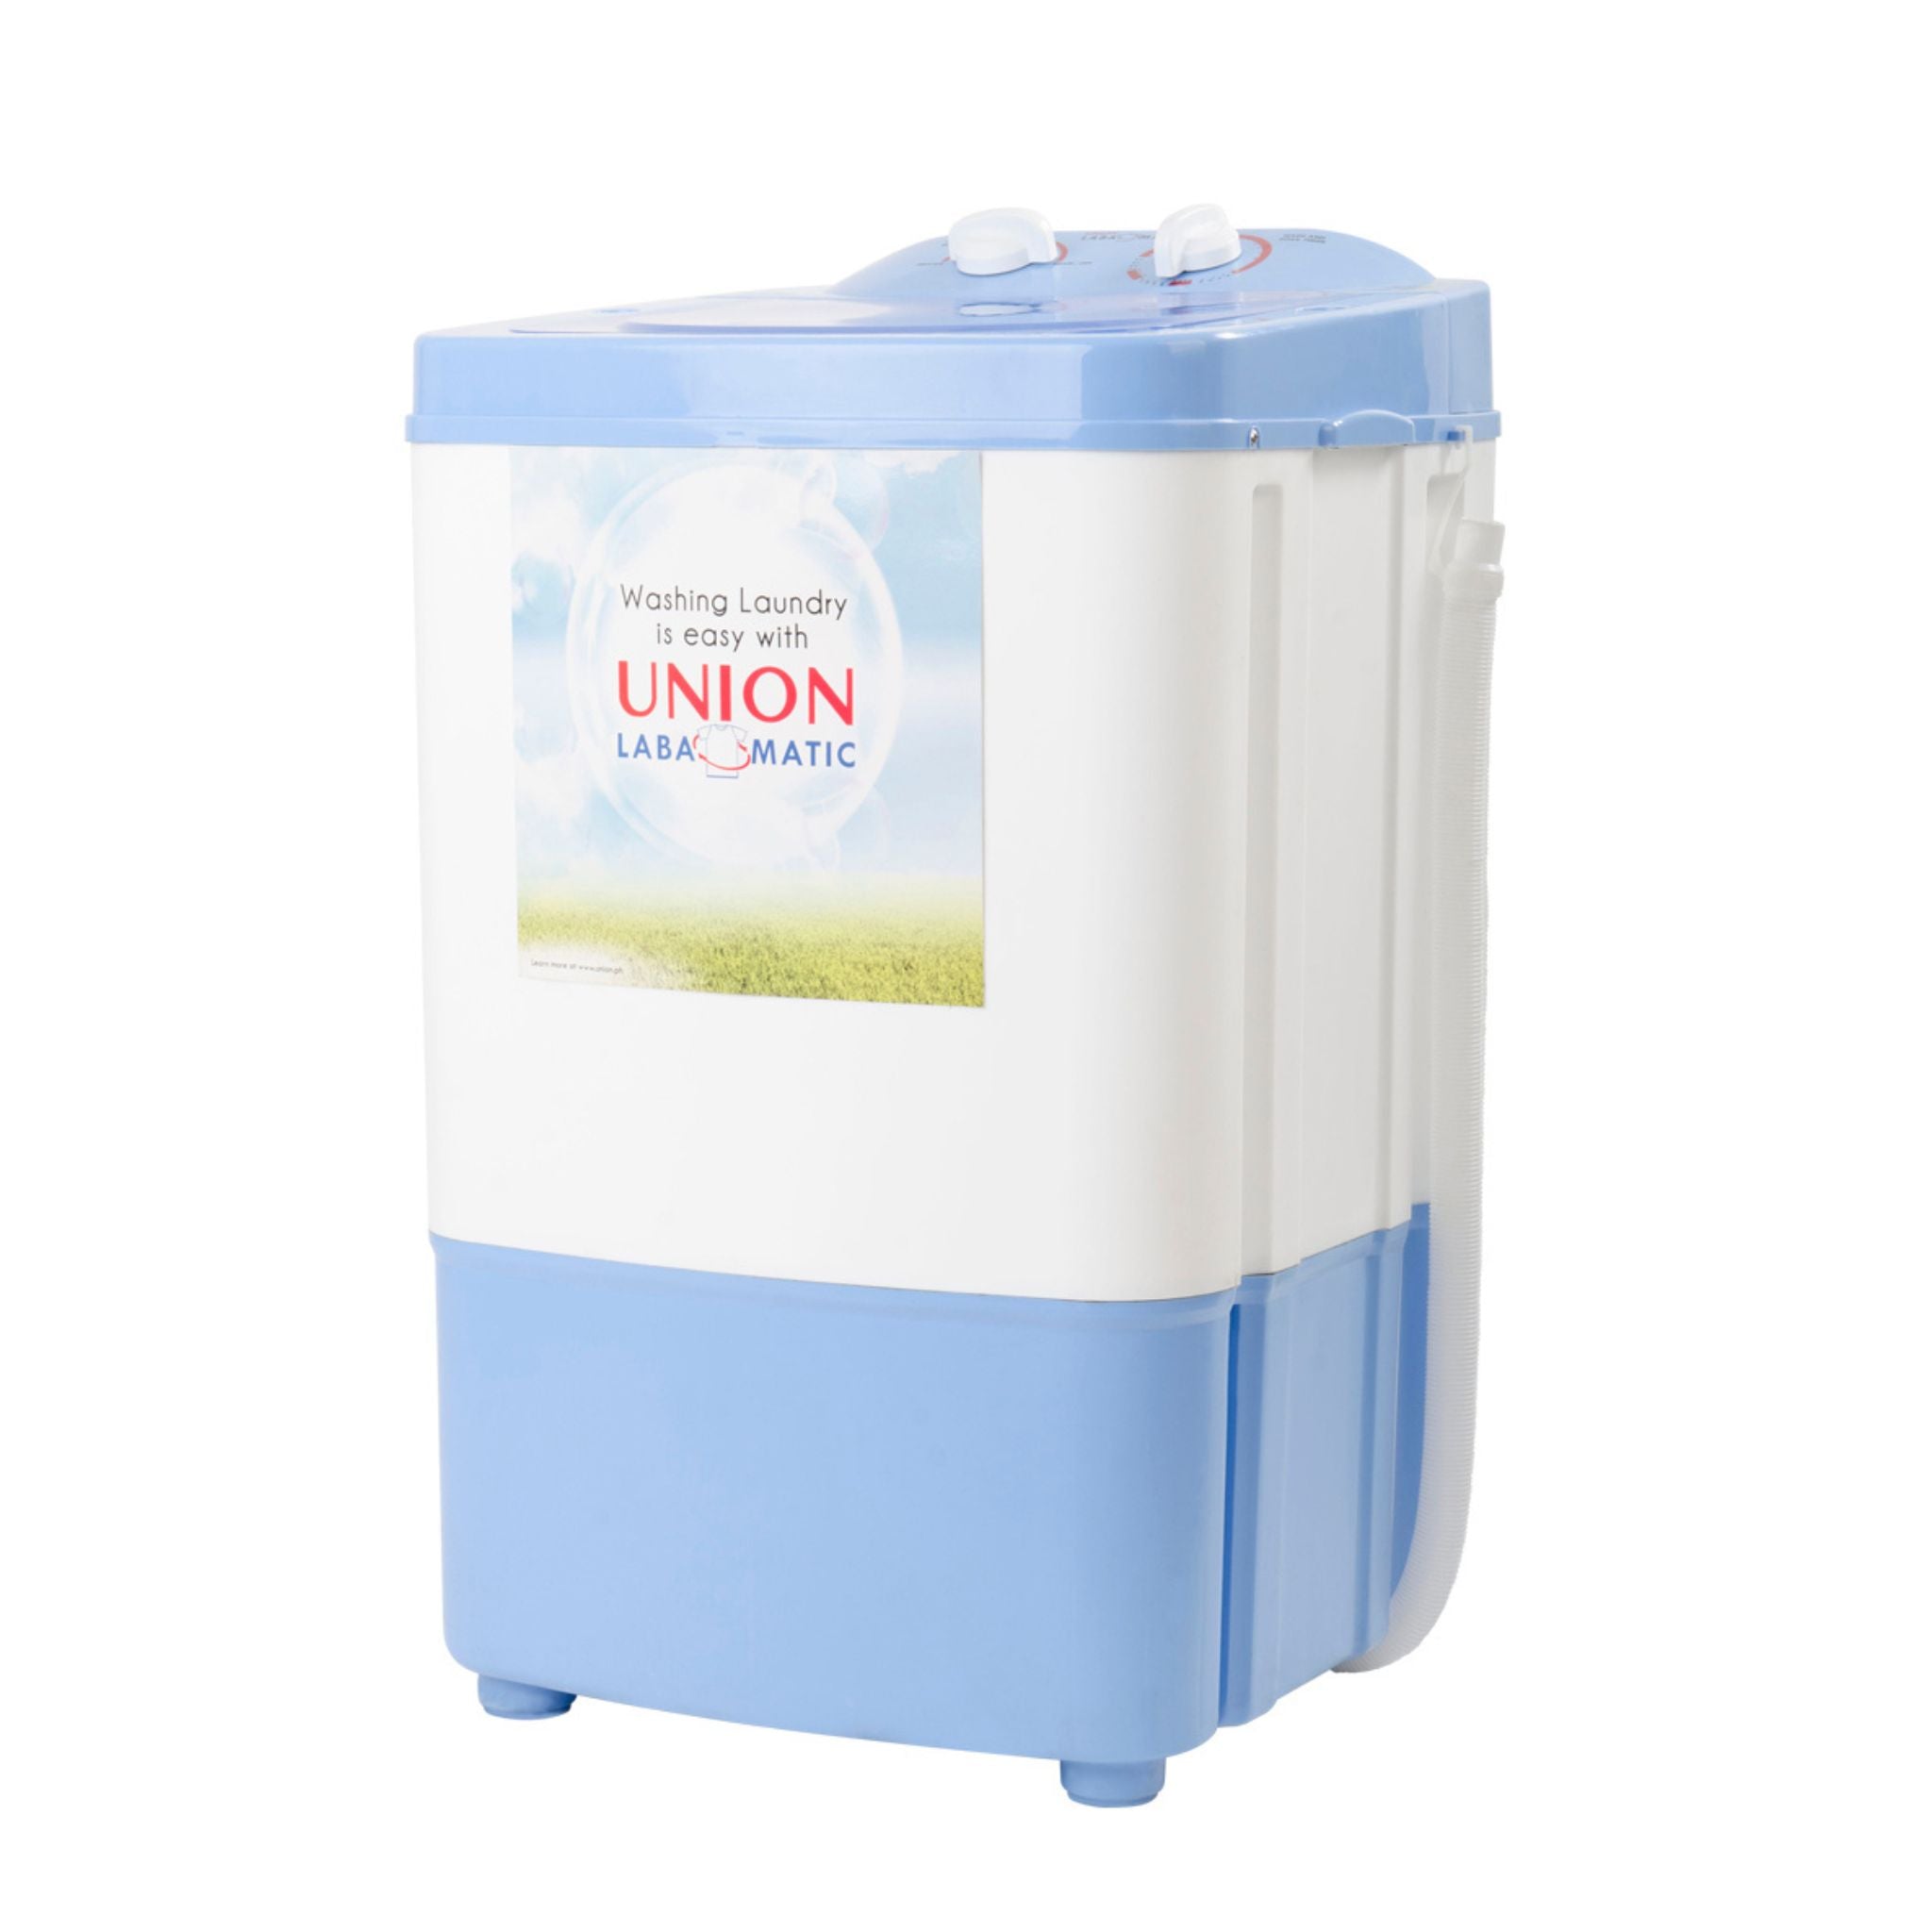 UNION UGWM 90 9.0kg Single Tub Washing Machine Union